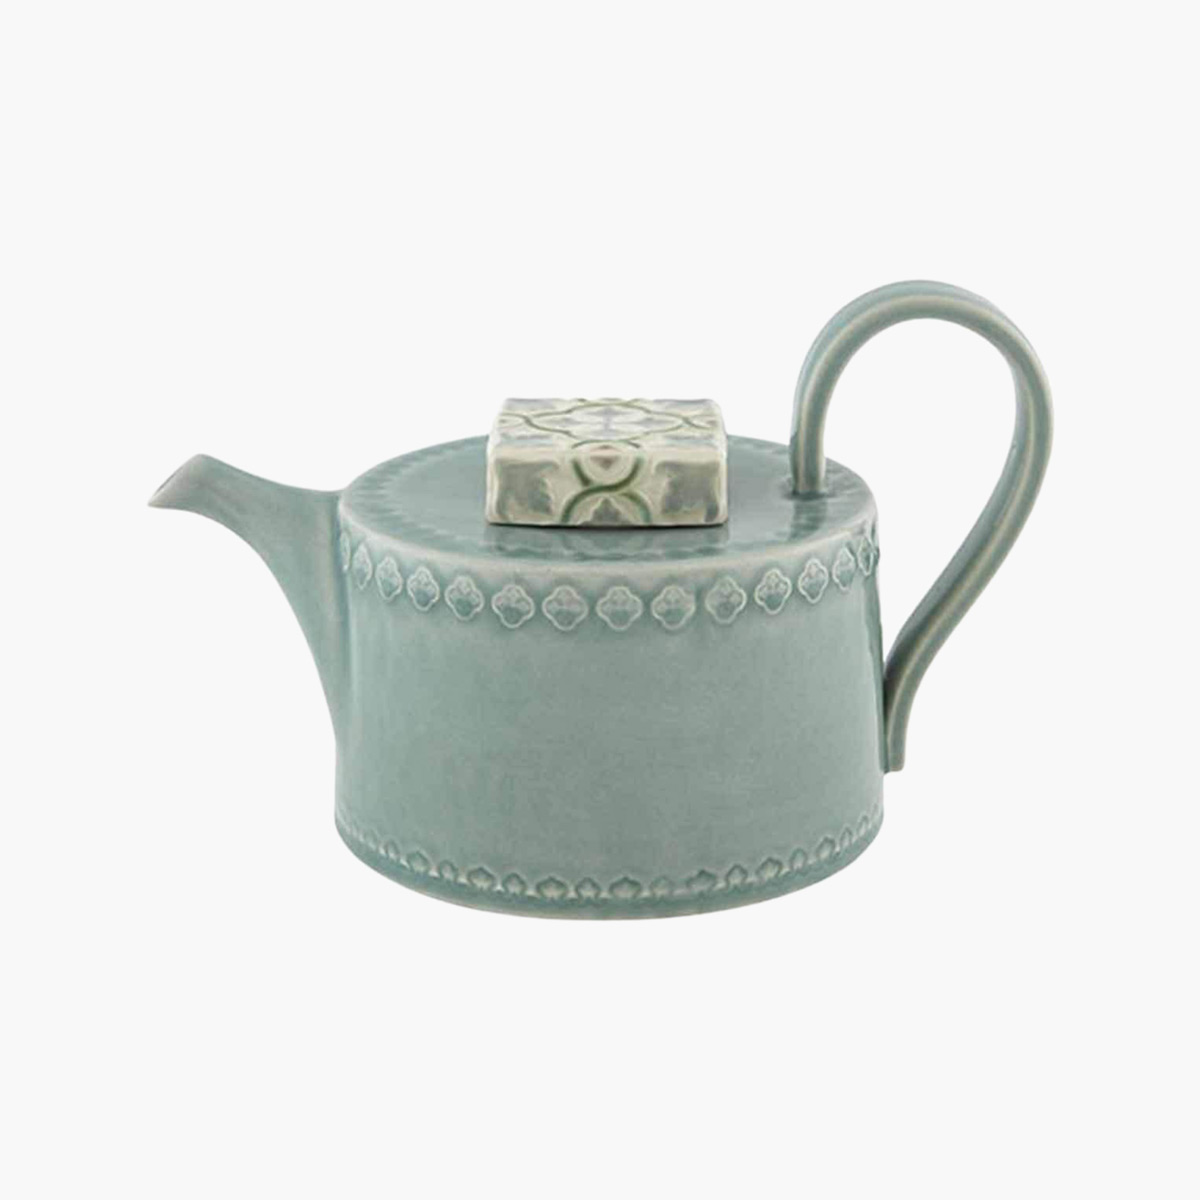 A ceramic Nova blue tea pot.